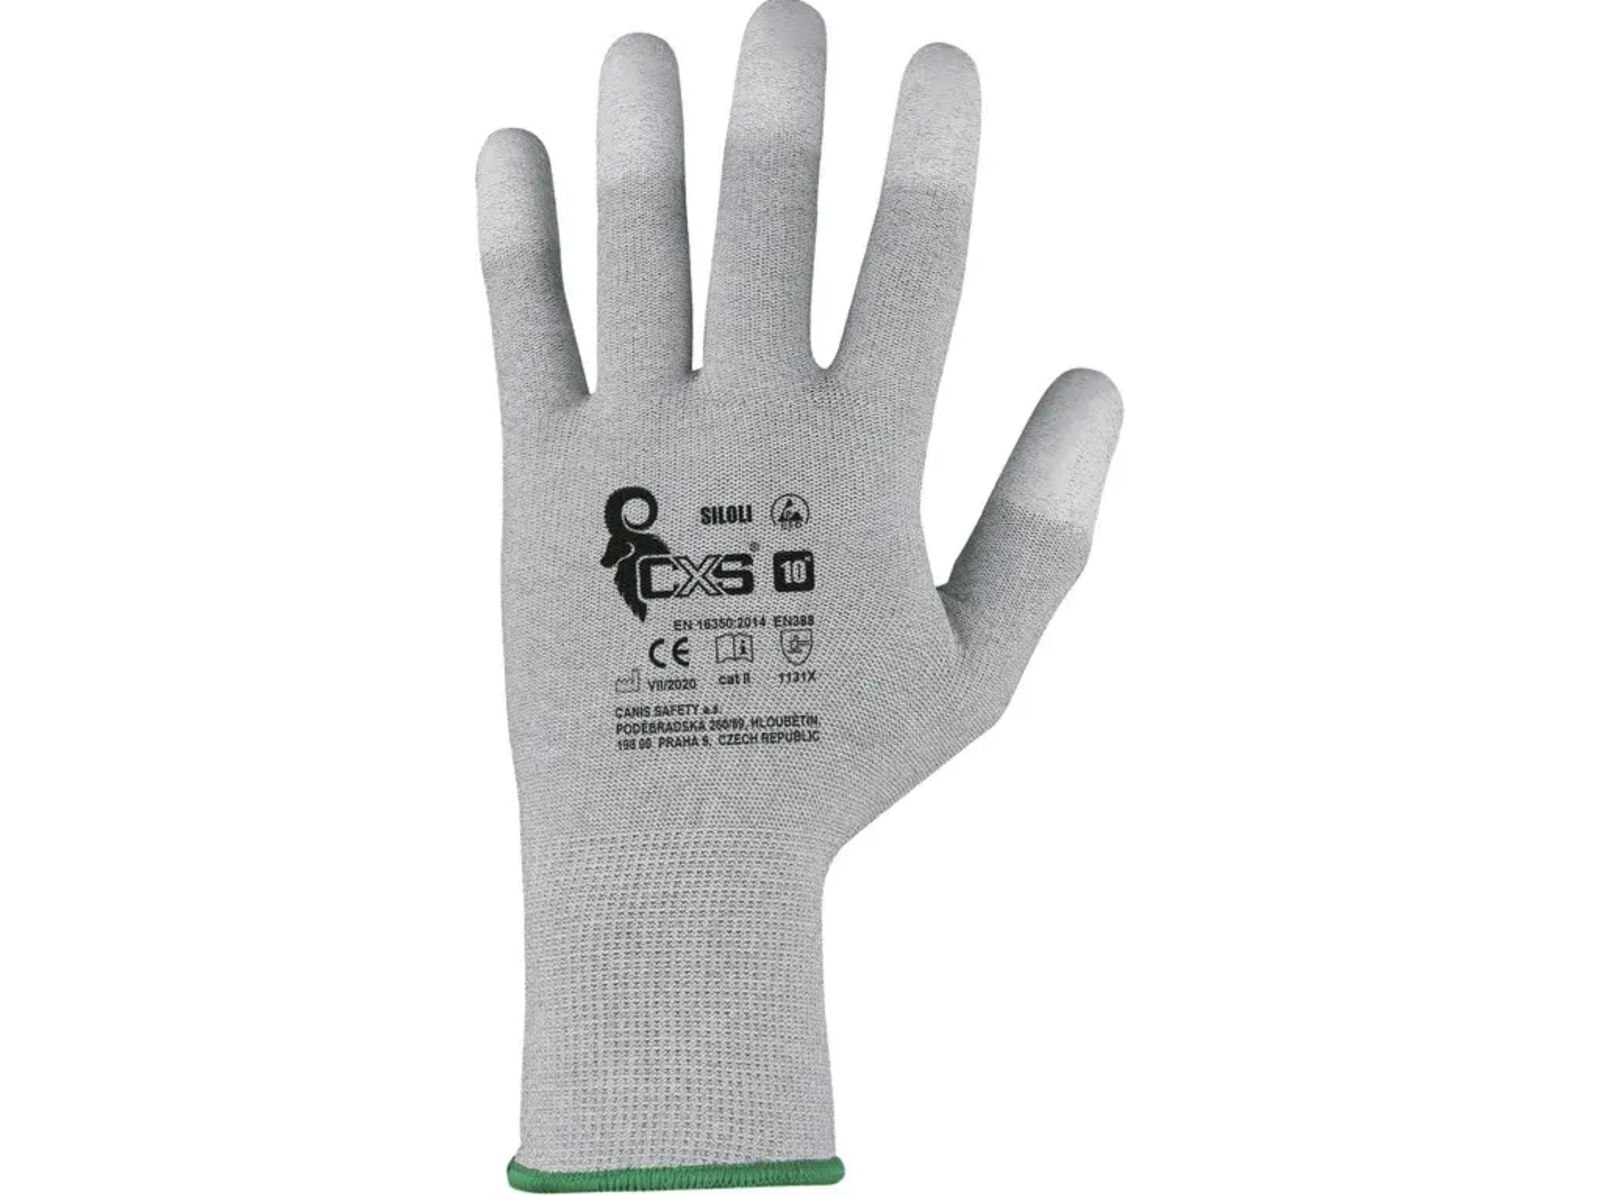 Povrstvené antistatické rukavice CXS Siloli - veľkosť: 7/S, farba: sivá